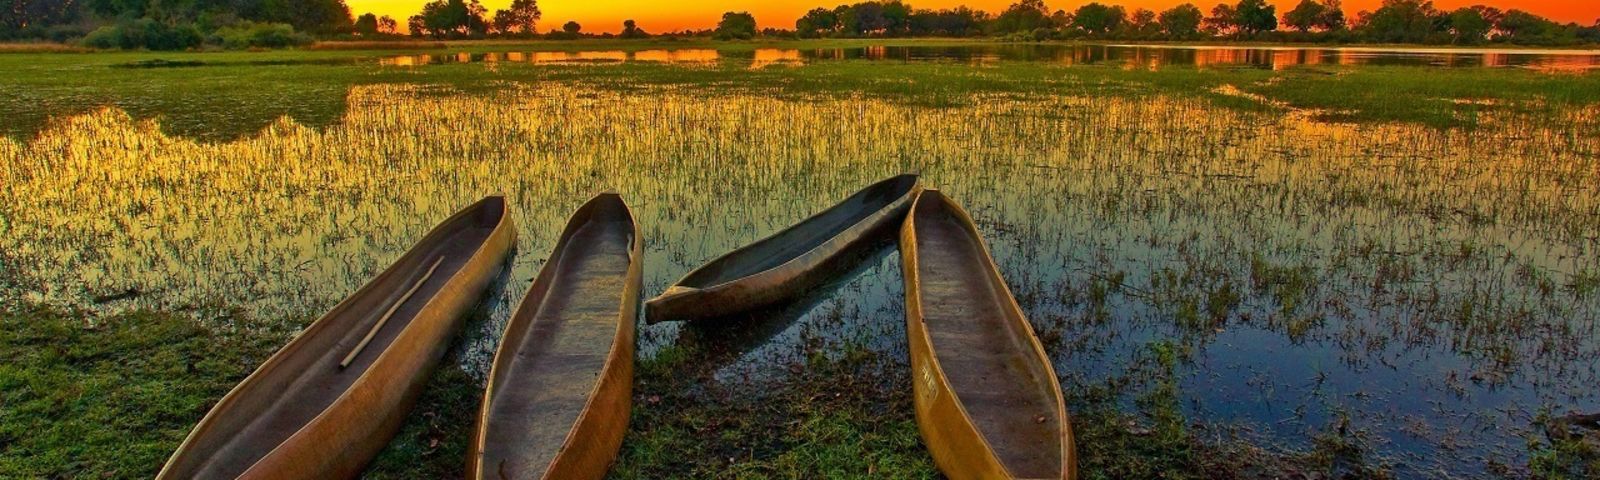 三角洲-Africa-Botswana-Okavango-Delta-Tours1